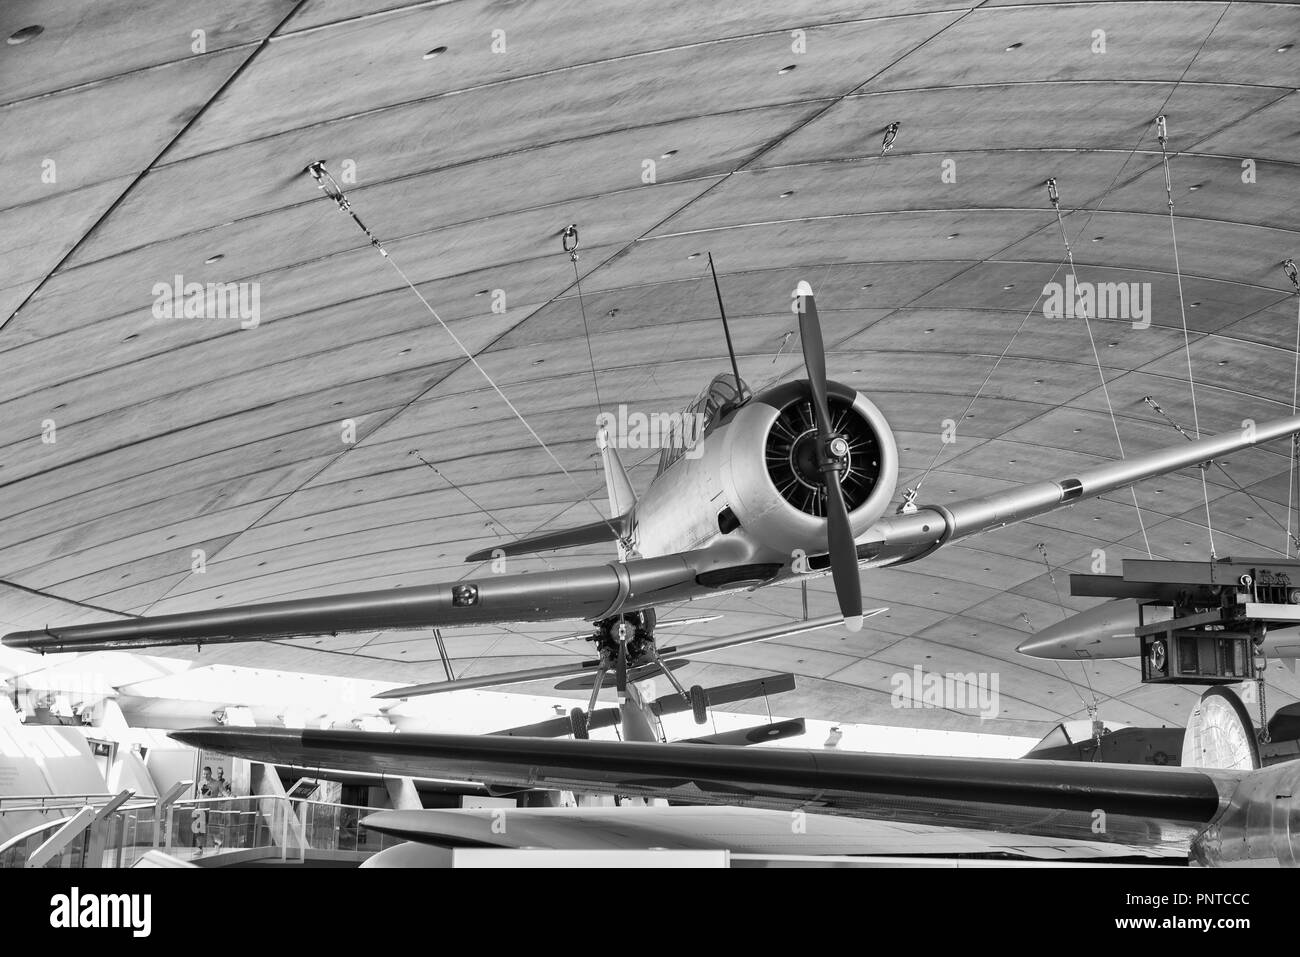 Mélange d'avion militaire britannique et américaine sur l'affichage à Duxford Museum Banque D'Images